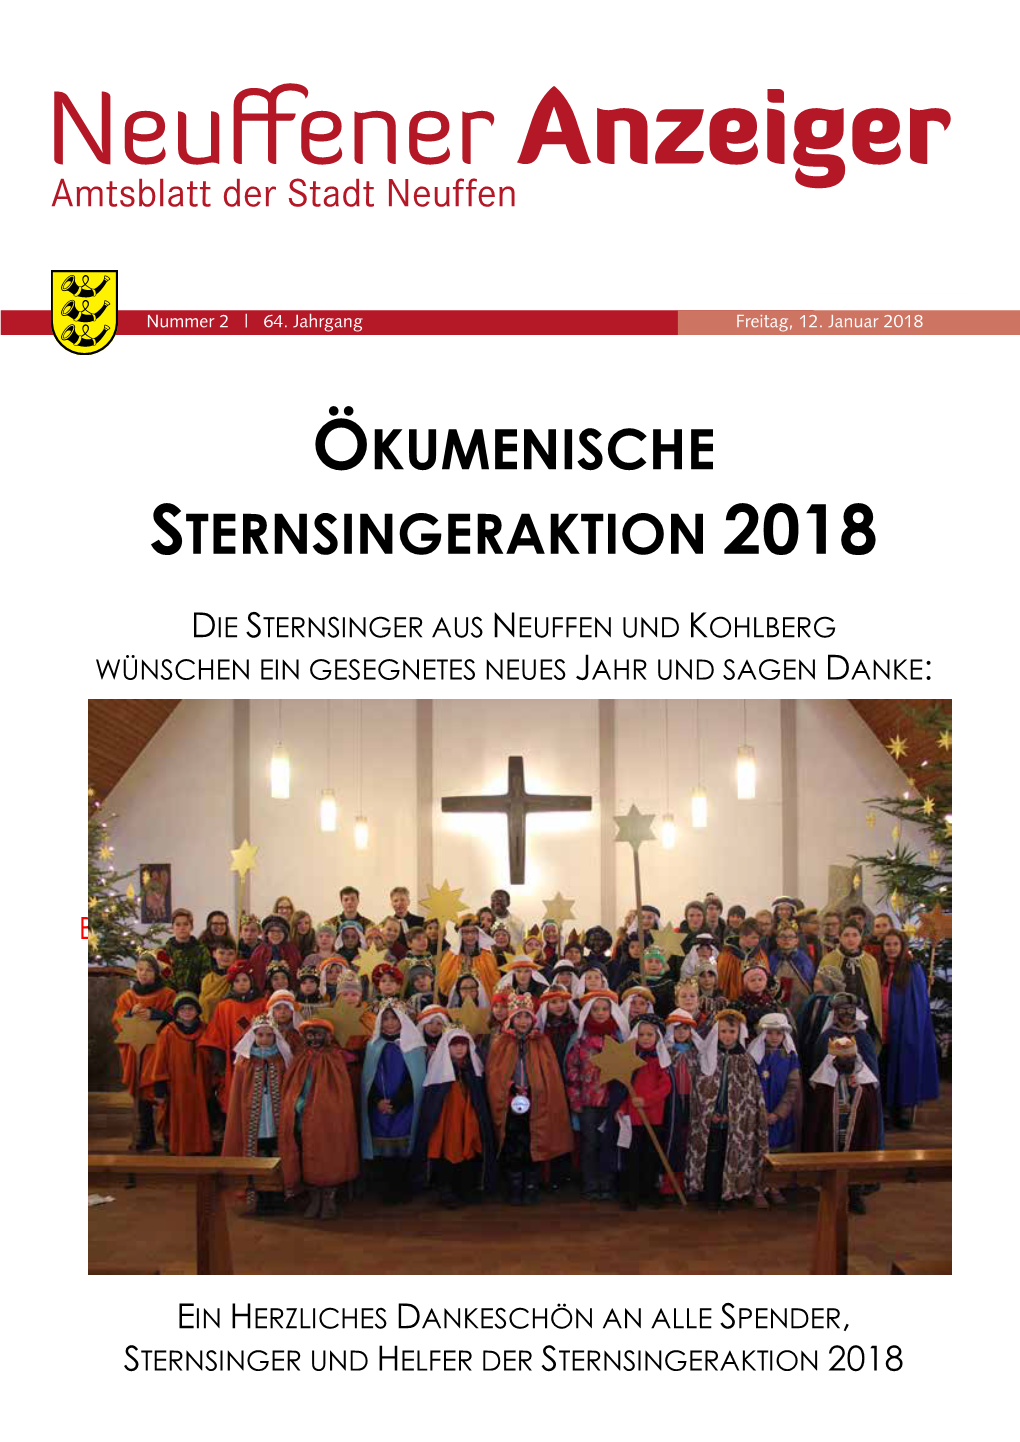 Ökumenische Sternsingeraktion 2018